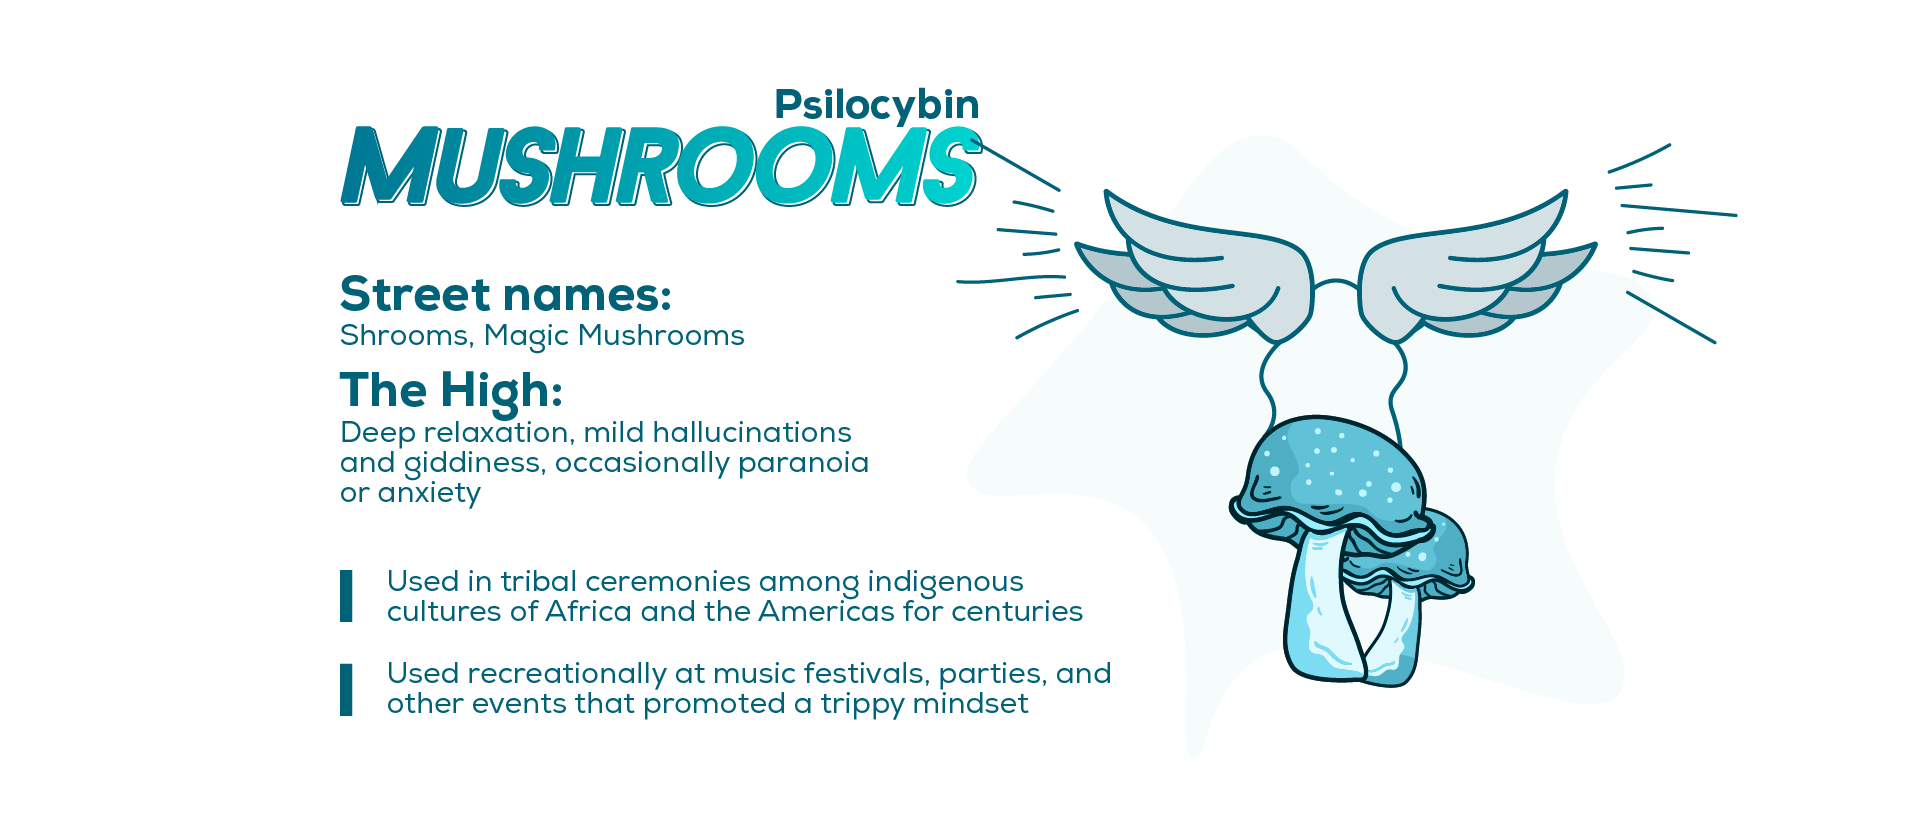 Mushrooms in Pop Culture